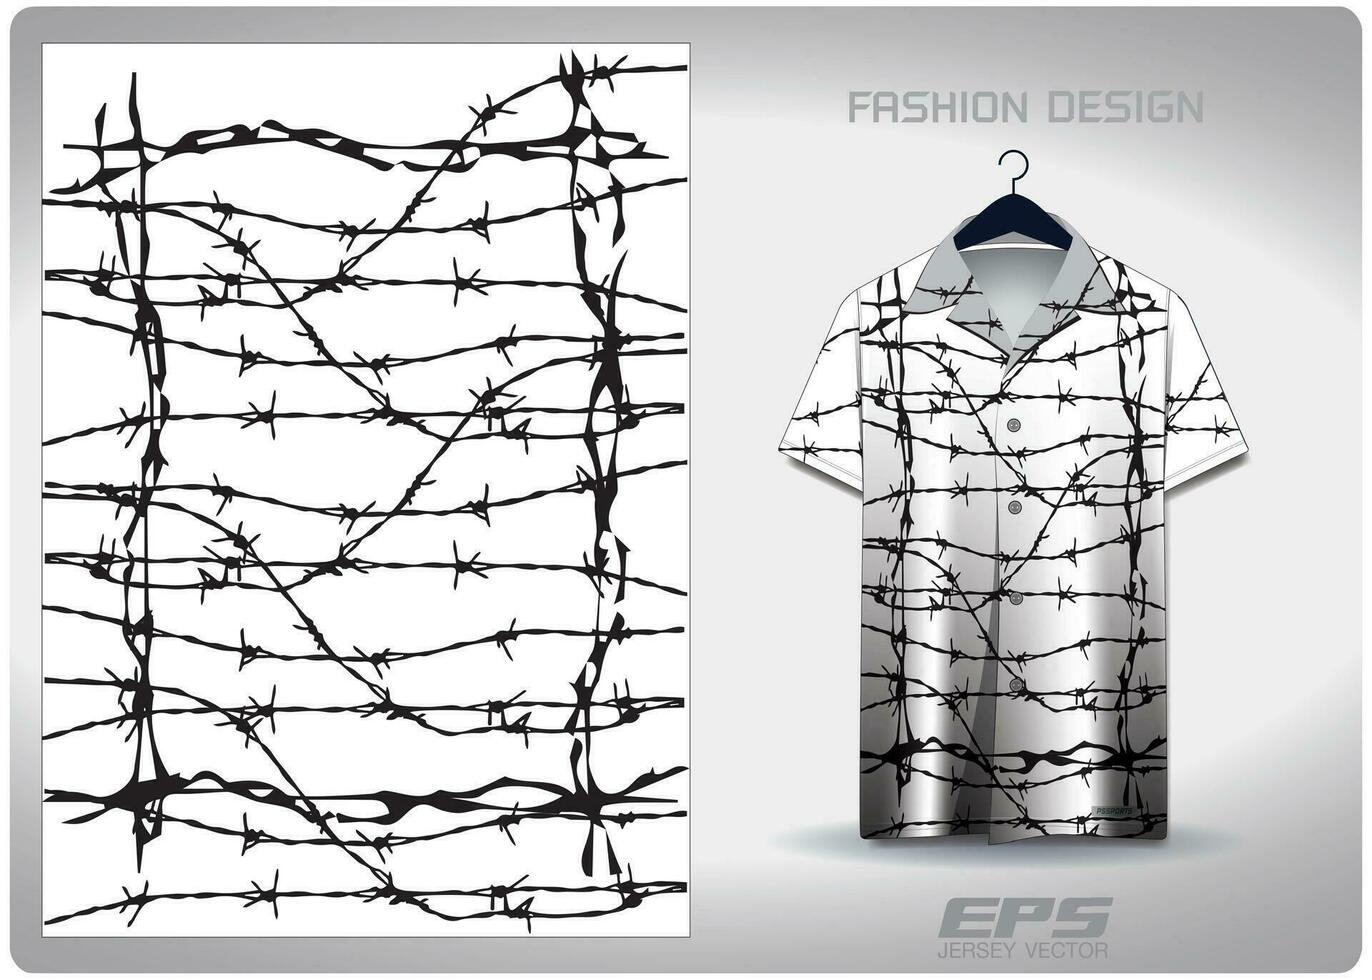 vektor hawaiian skjorta bakgrund bild.vit hullingförsedda tråd staket mönster design, illustration, textil- bakgrund för hawaiian skjorta, tröja hawaiian skjorta